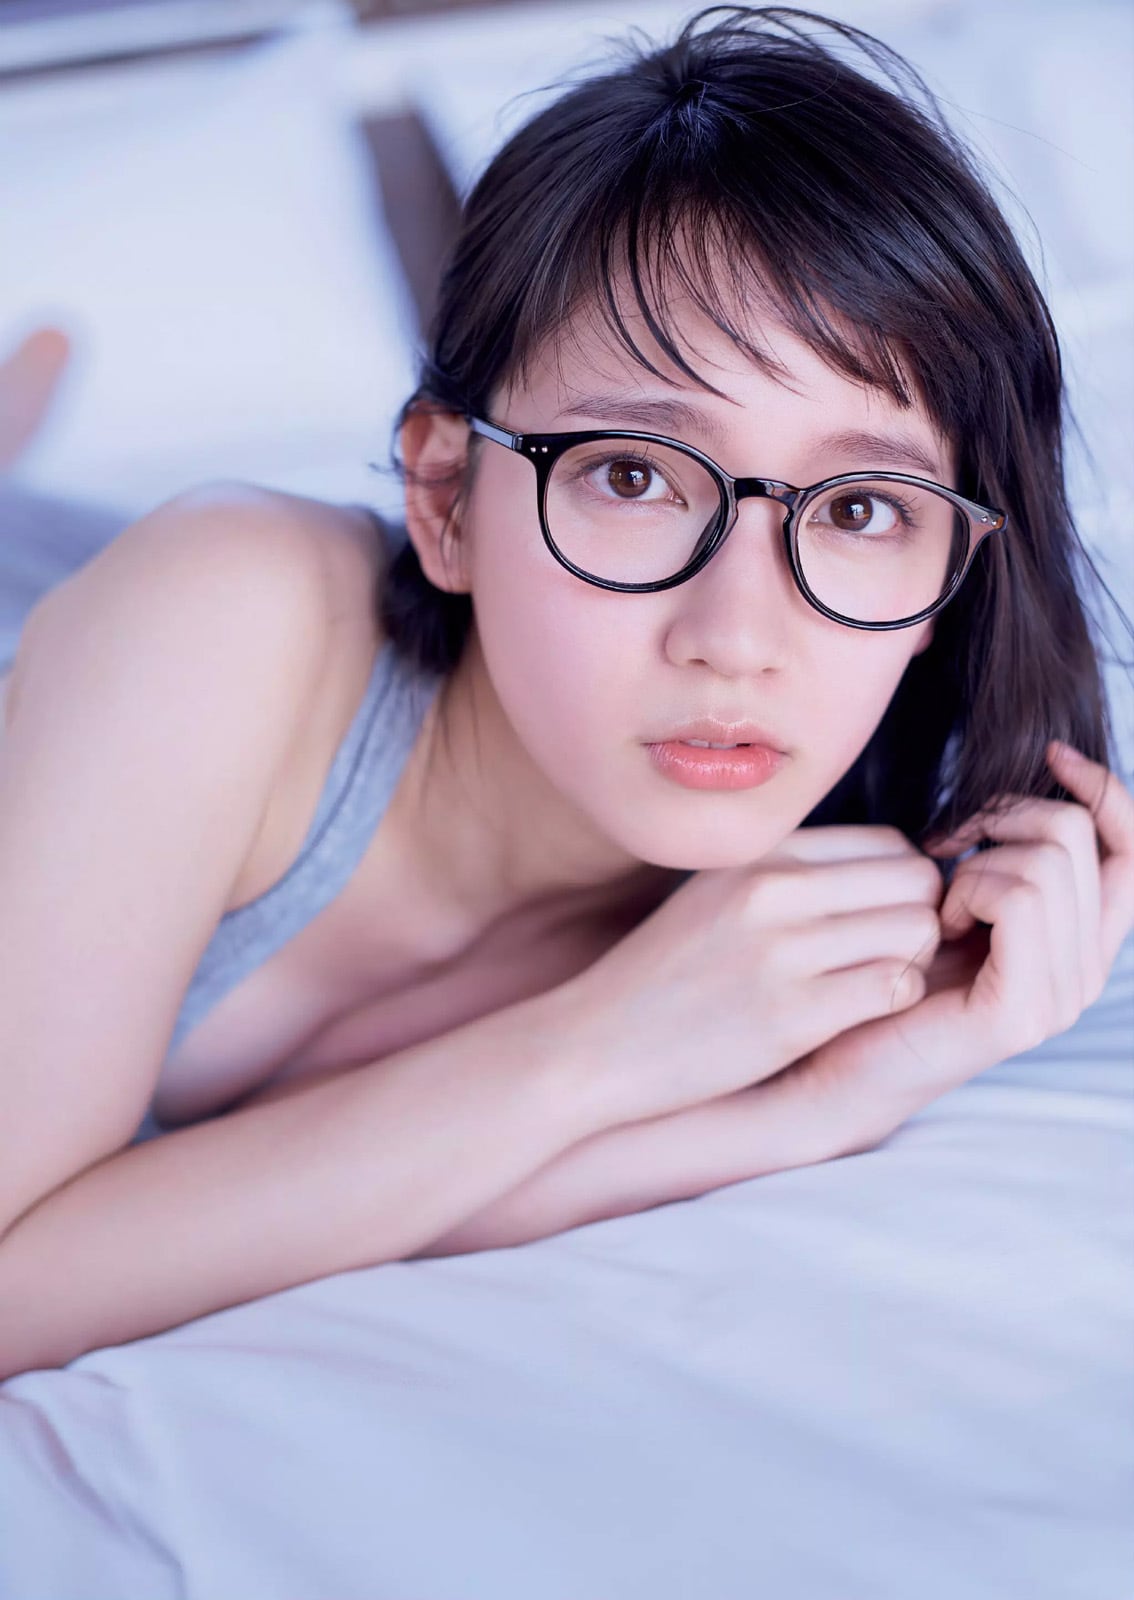 「週刊プレイボーイ 2016年 5/23 号」眼鏡をかけた吉岡里帆のグラビア